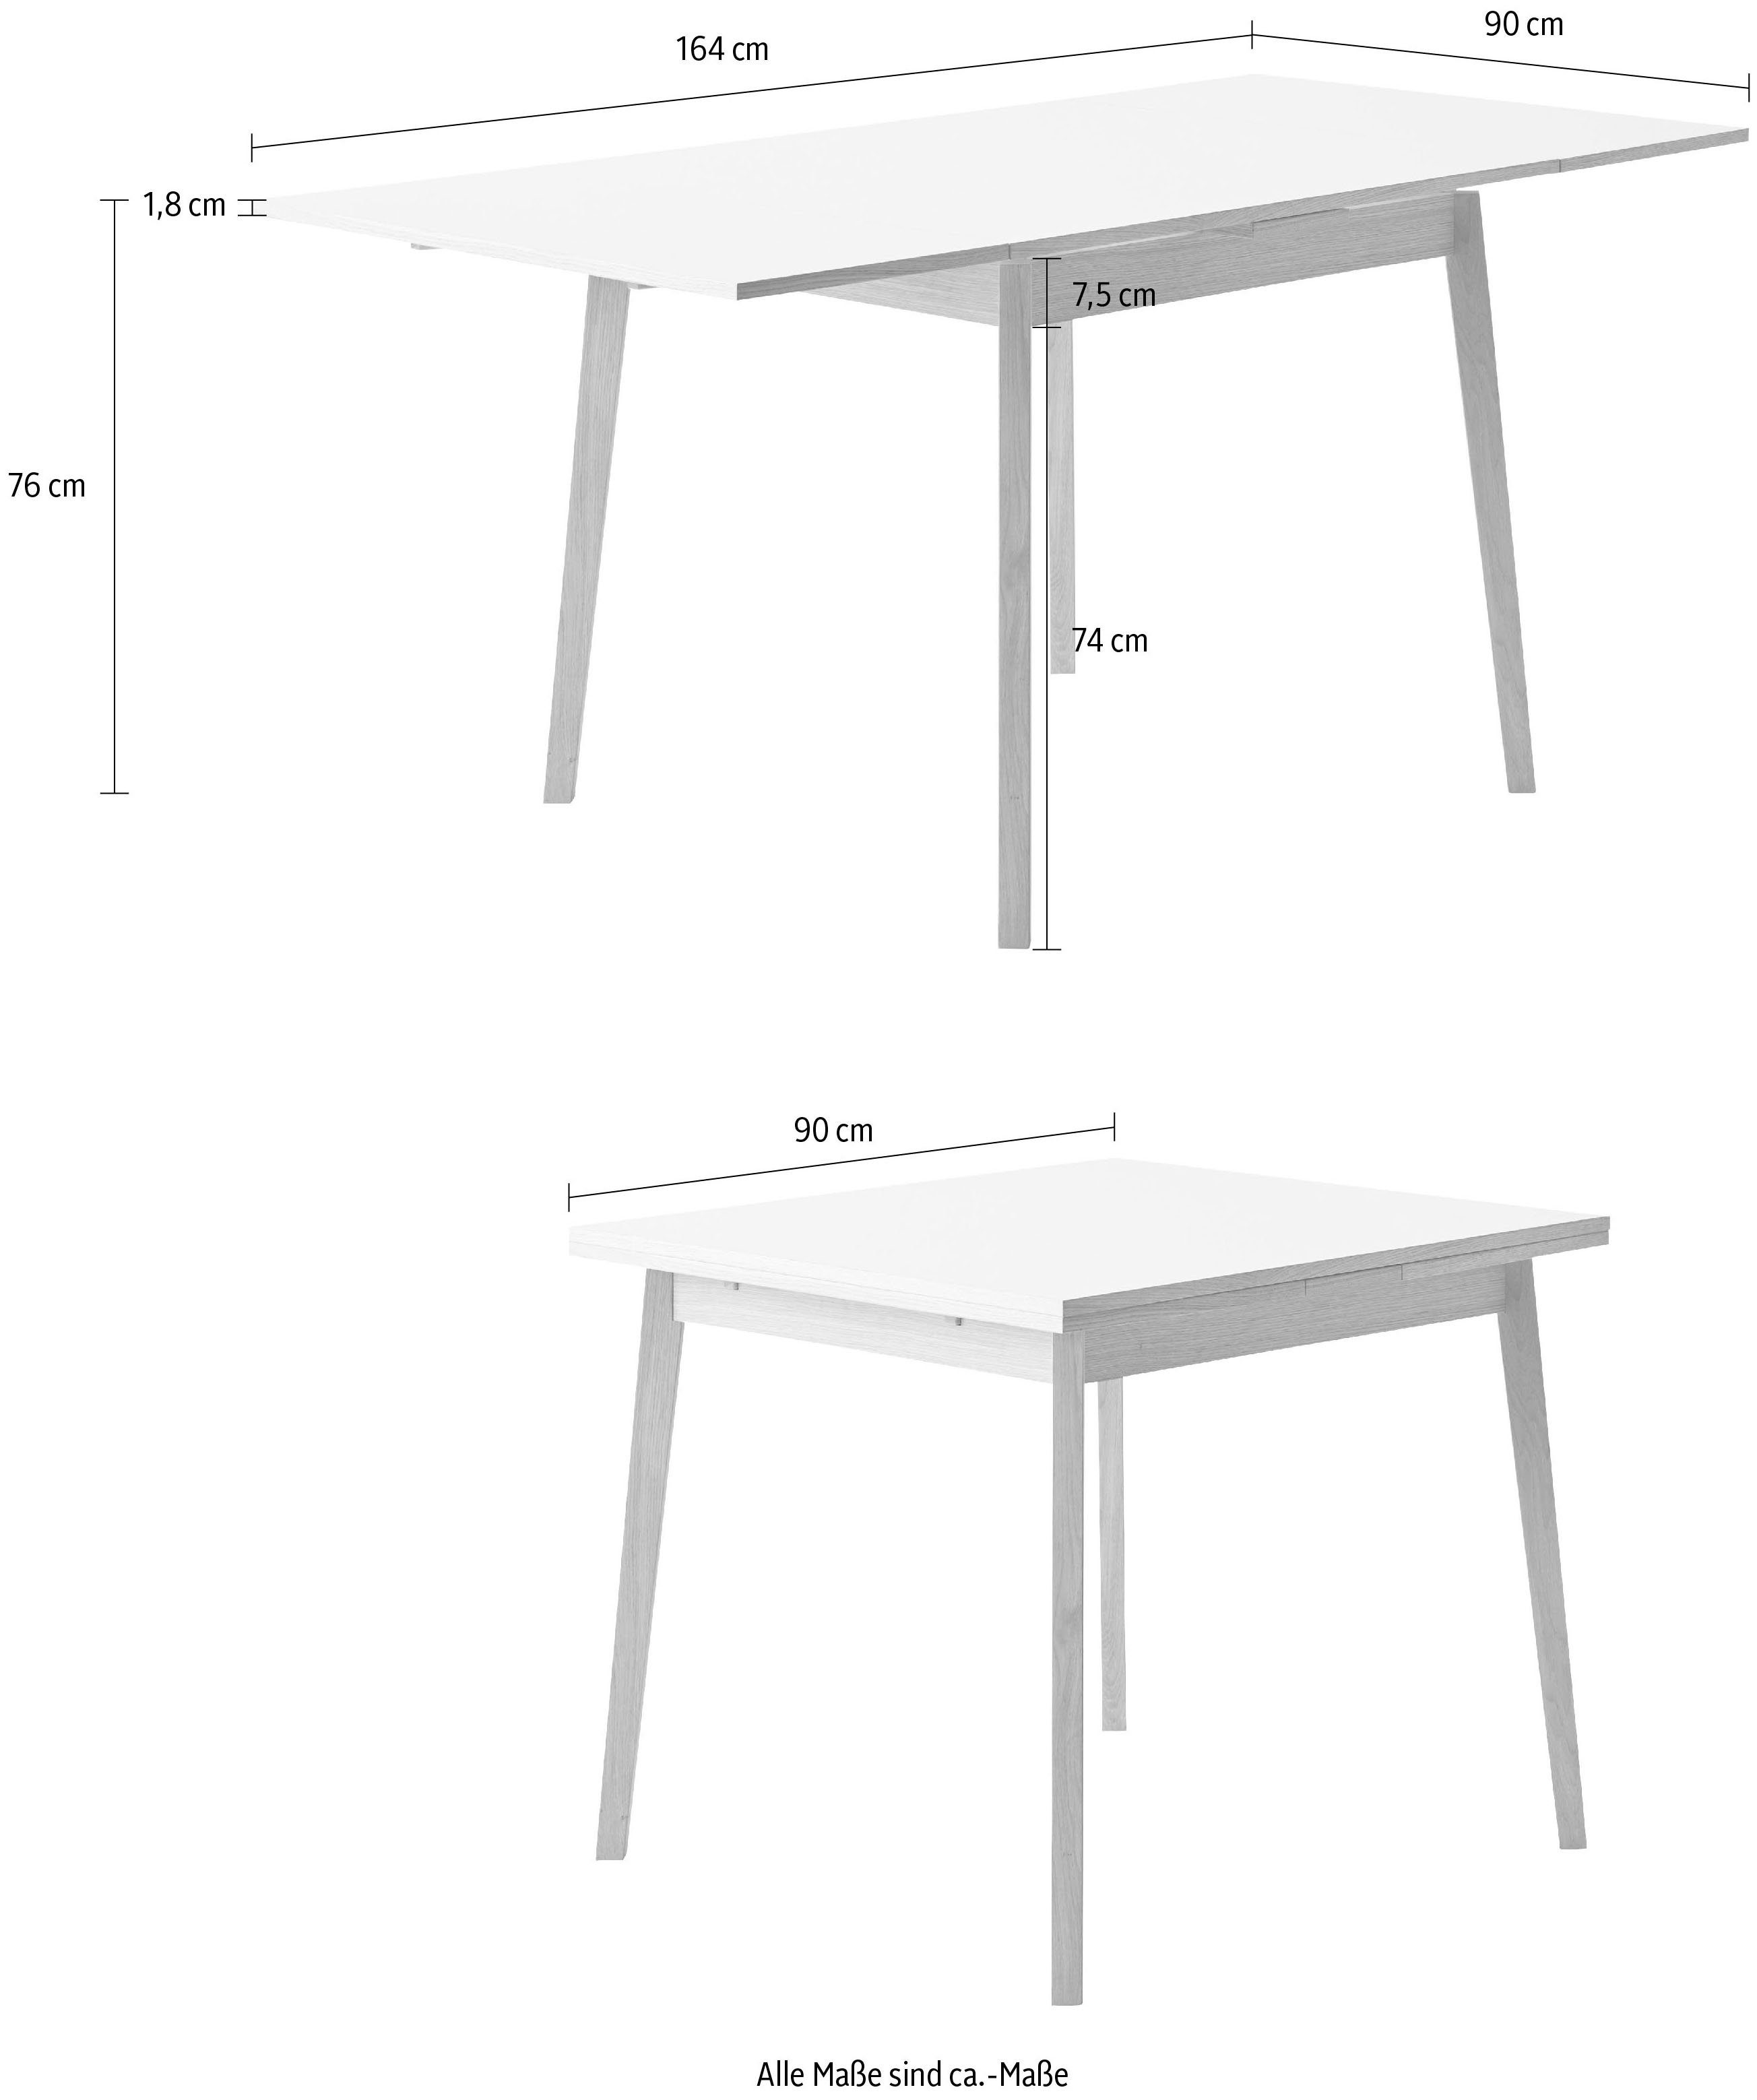 Basic Massivholz Hammel Esstisch Furniture aus cm, by Single, Gestell Tischplatte Hammel Weiß/Naturfarben aus Melamin, 90(164)x90